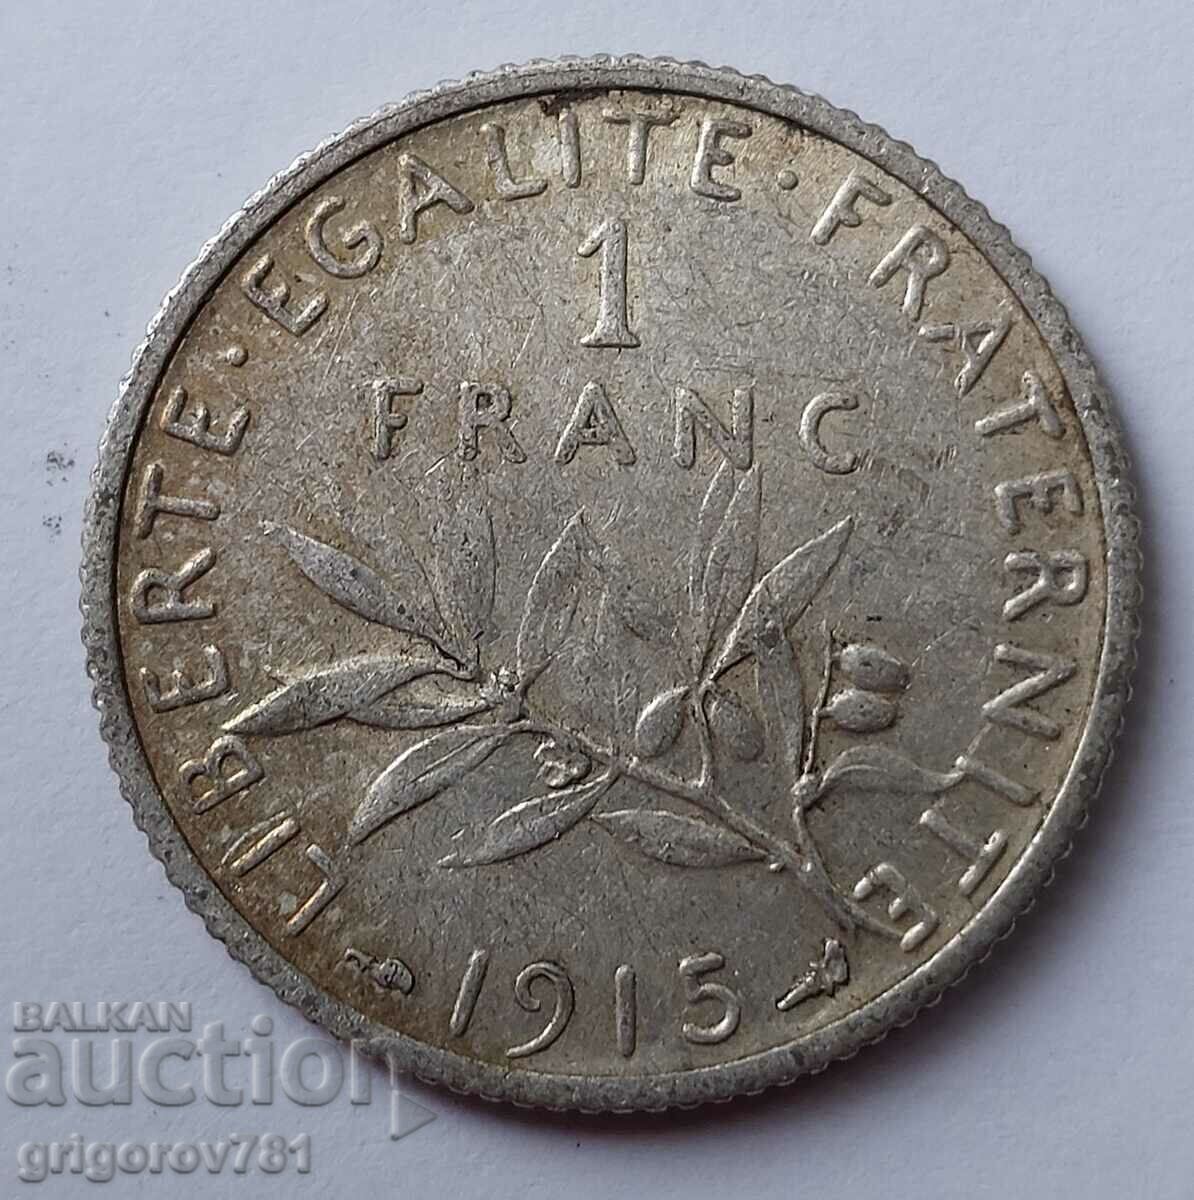 1 franc argint Franța 1915 - monedă de argint №3